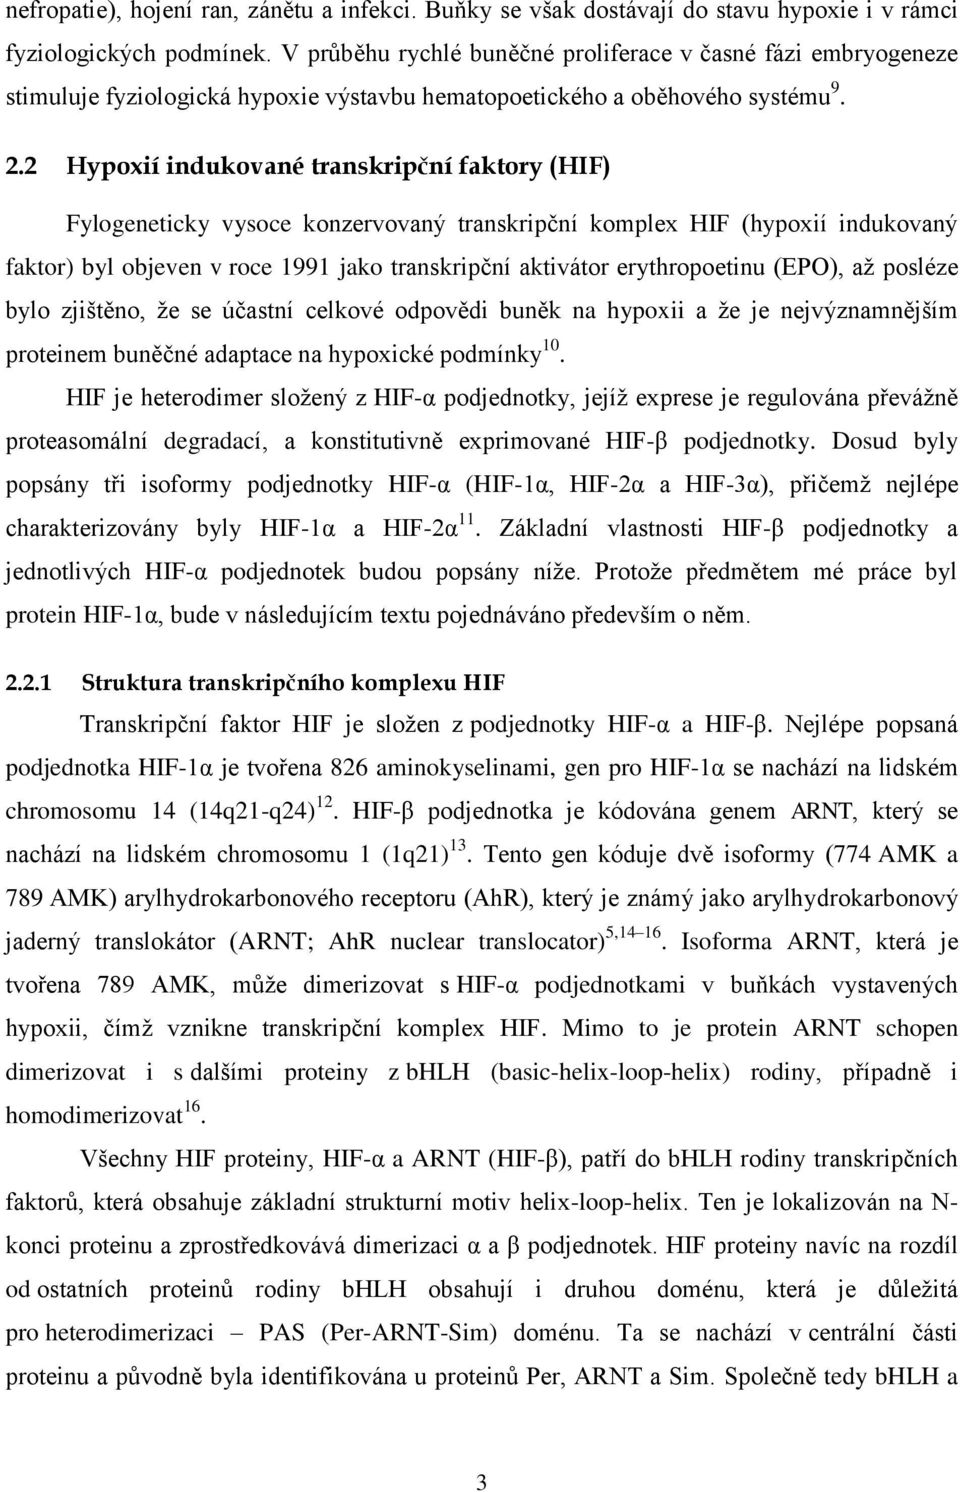 2 Hypoxií indukované transkripční faktory (HIF) Fylogeneticky vysoce konzervovaný transkripční komplex HIF (hypoxií indukovaný faktor) byl objeven v roce 1991 jako transkripční aktivátor